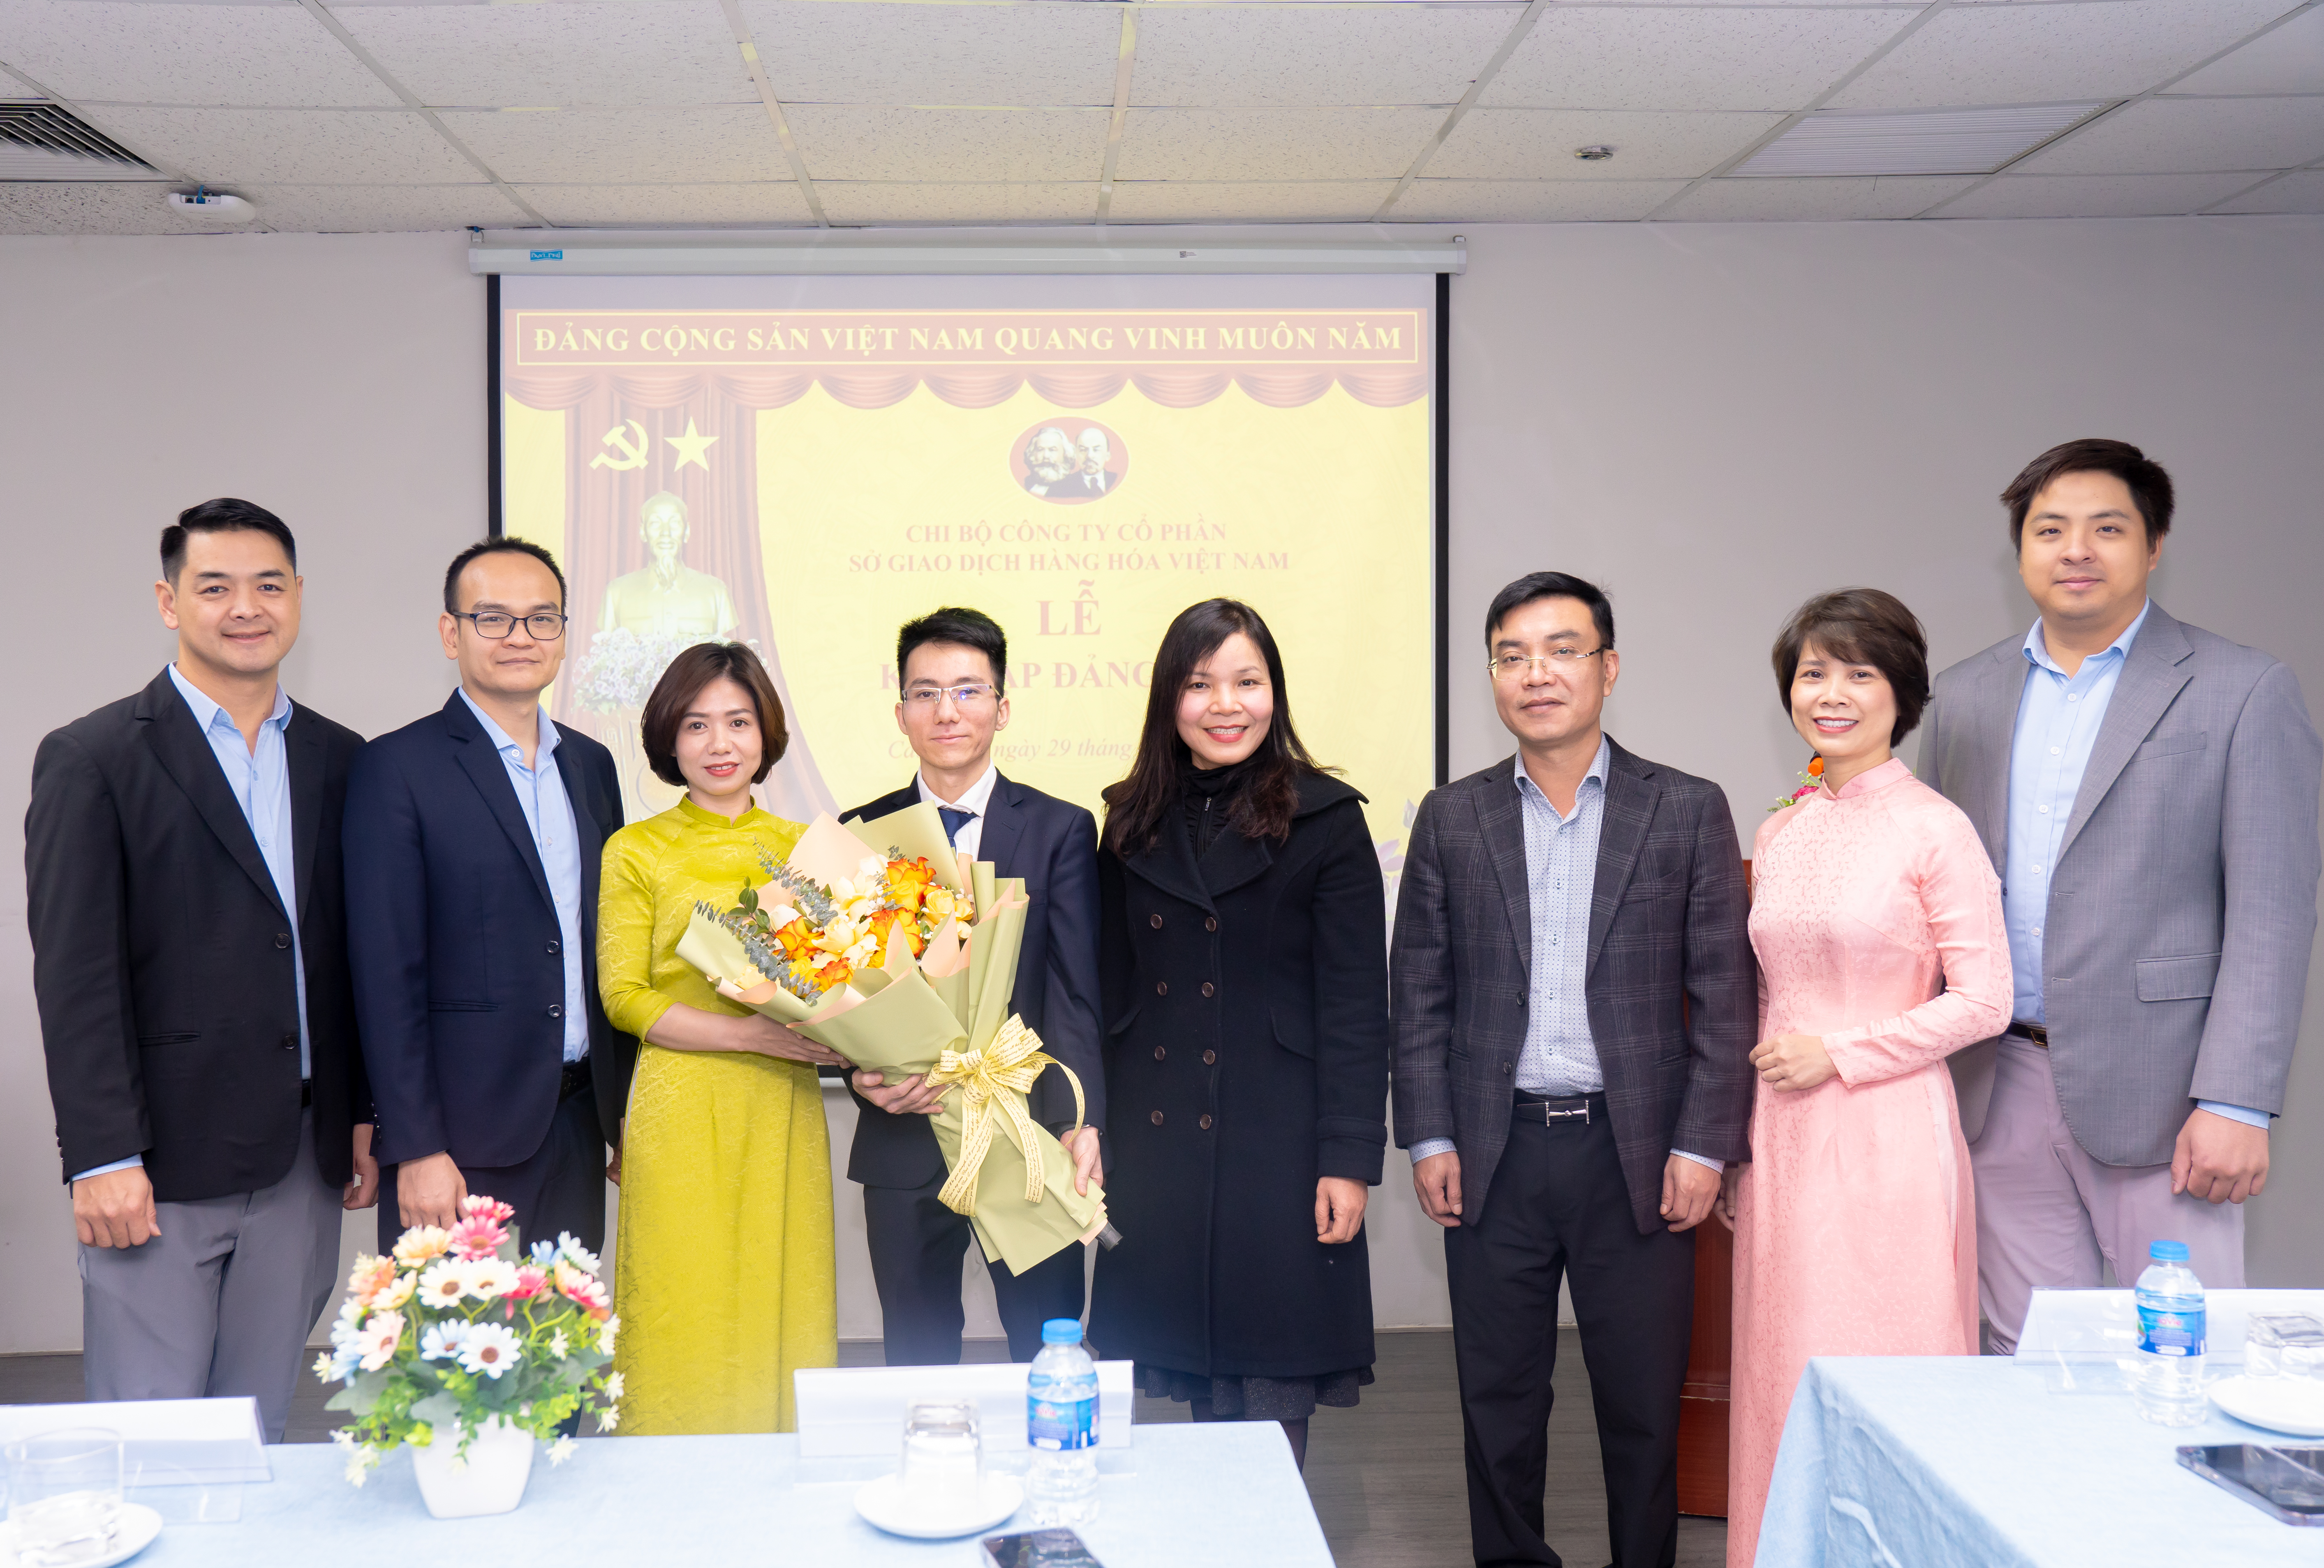 Chi bộ Sở Giao dịch Hàng hóa Việt Nam tổ chức lễ kết nạp Đảng viên